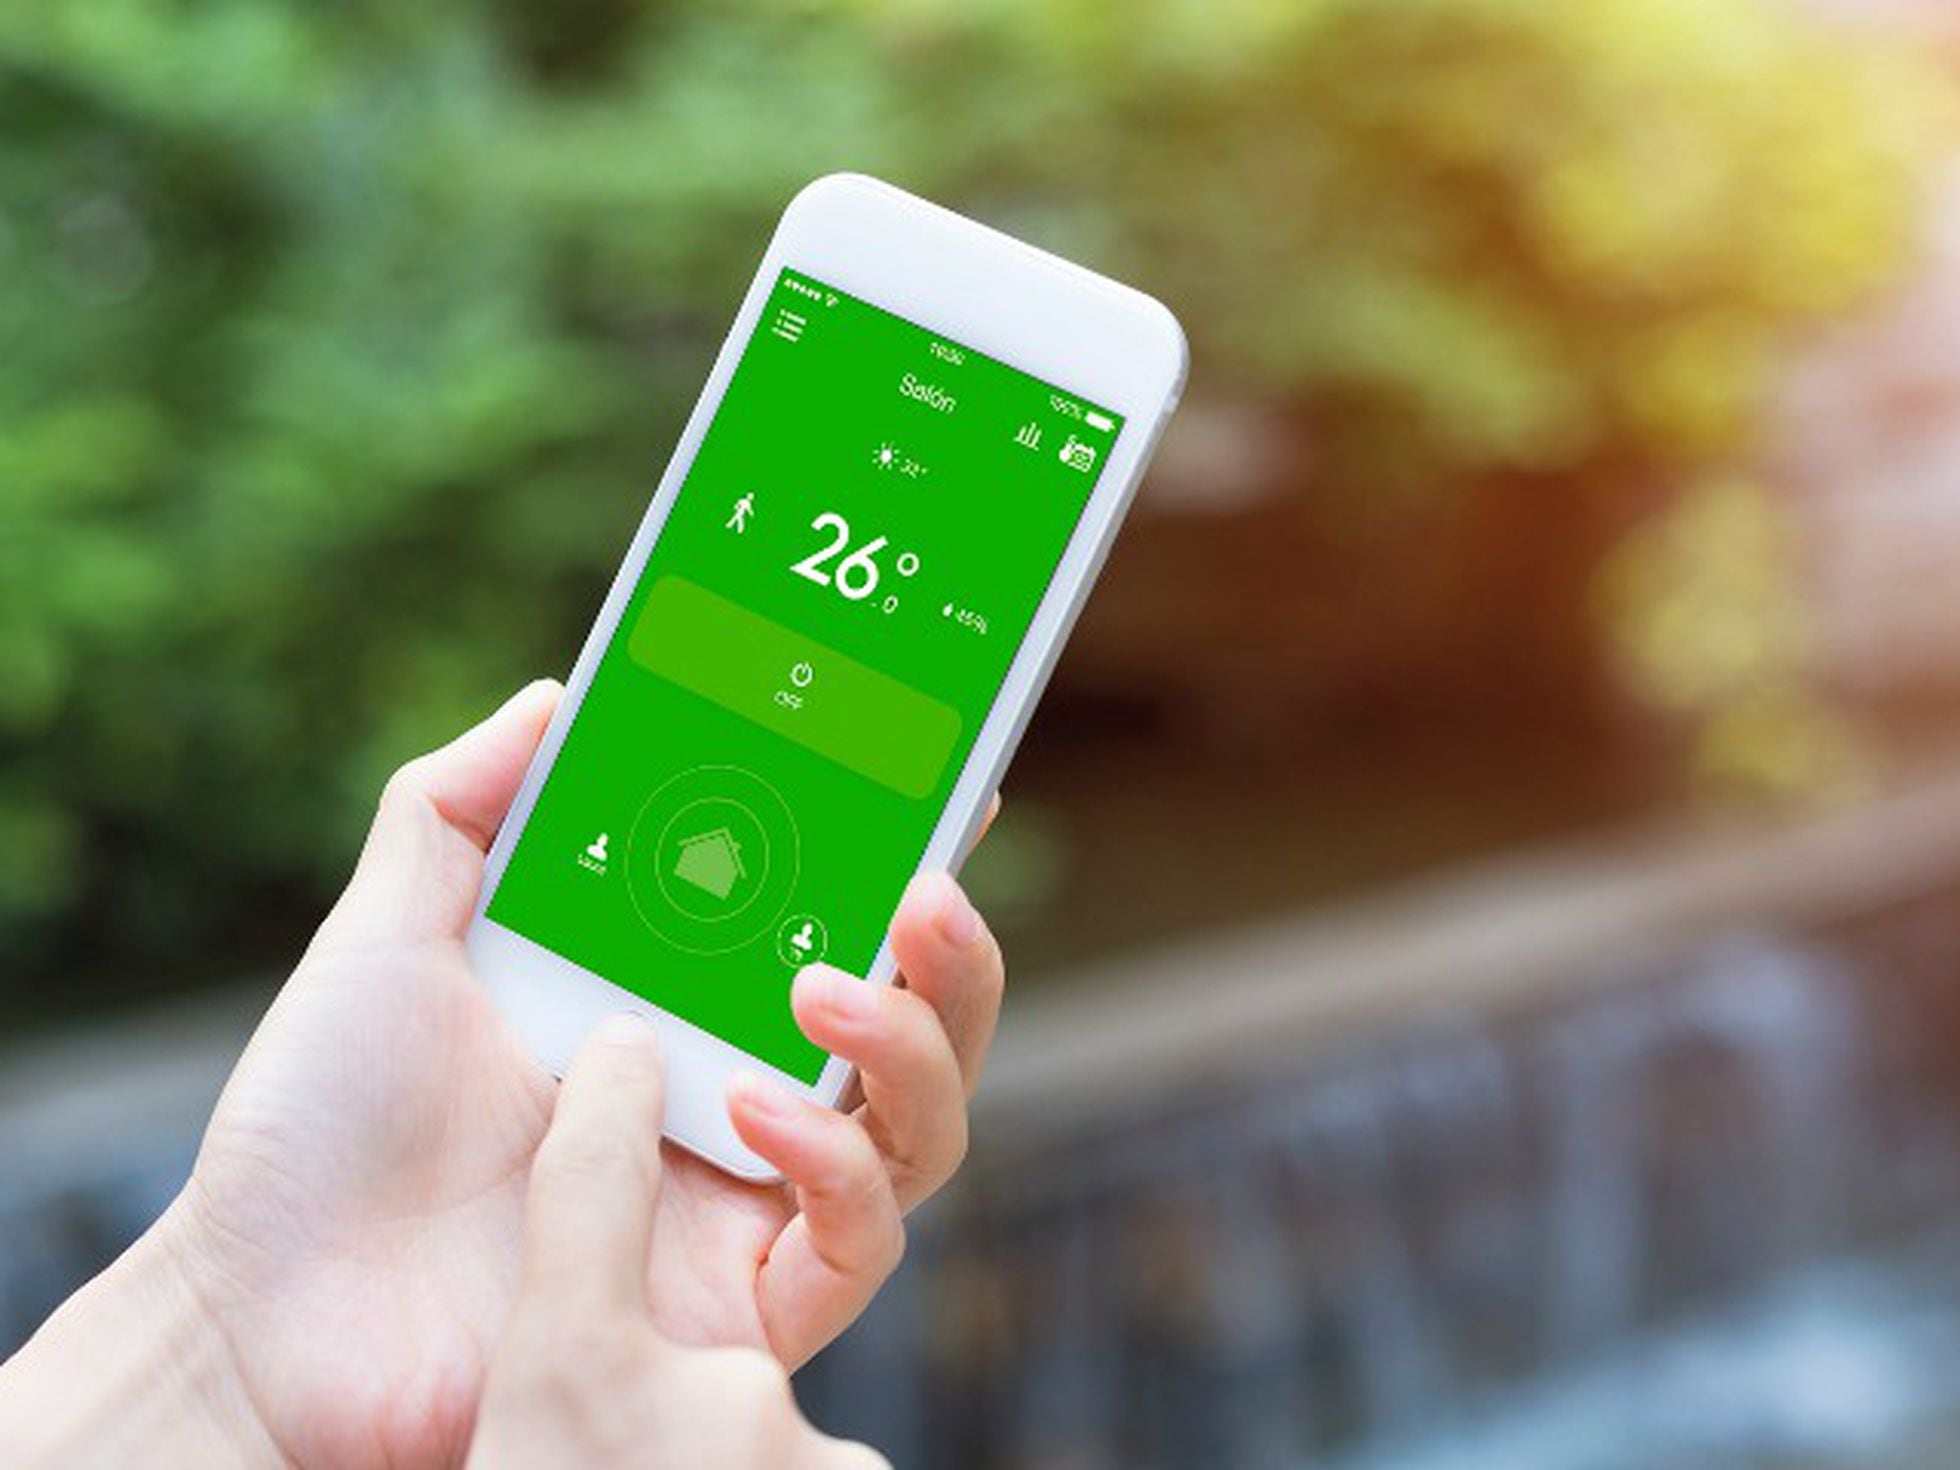 Siete dispositivos para controlar tu aire acondicionado con el móvil o la  voz y conectarlo al Wi-Fi de casa